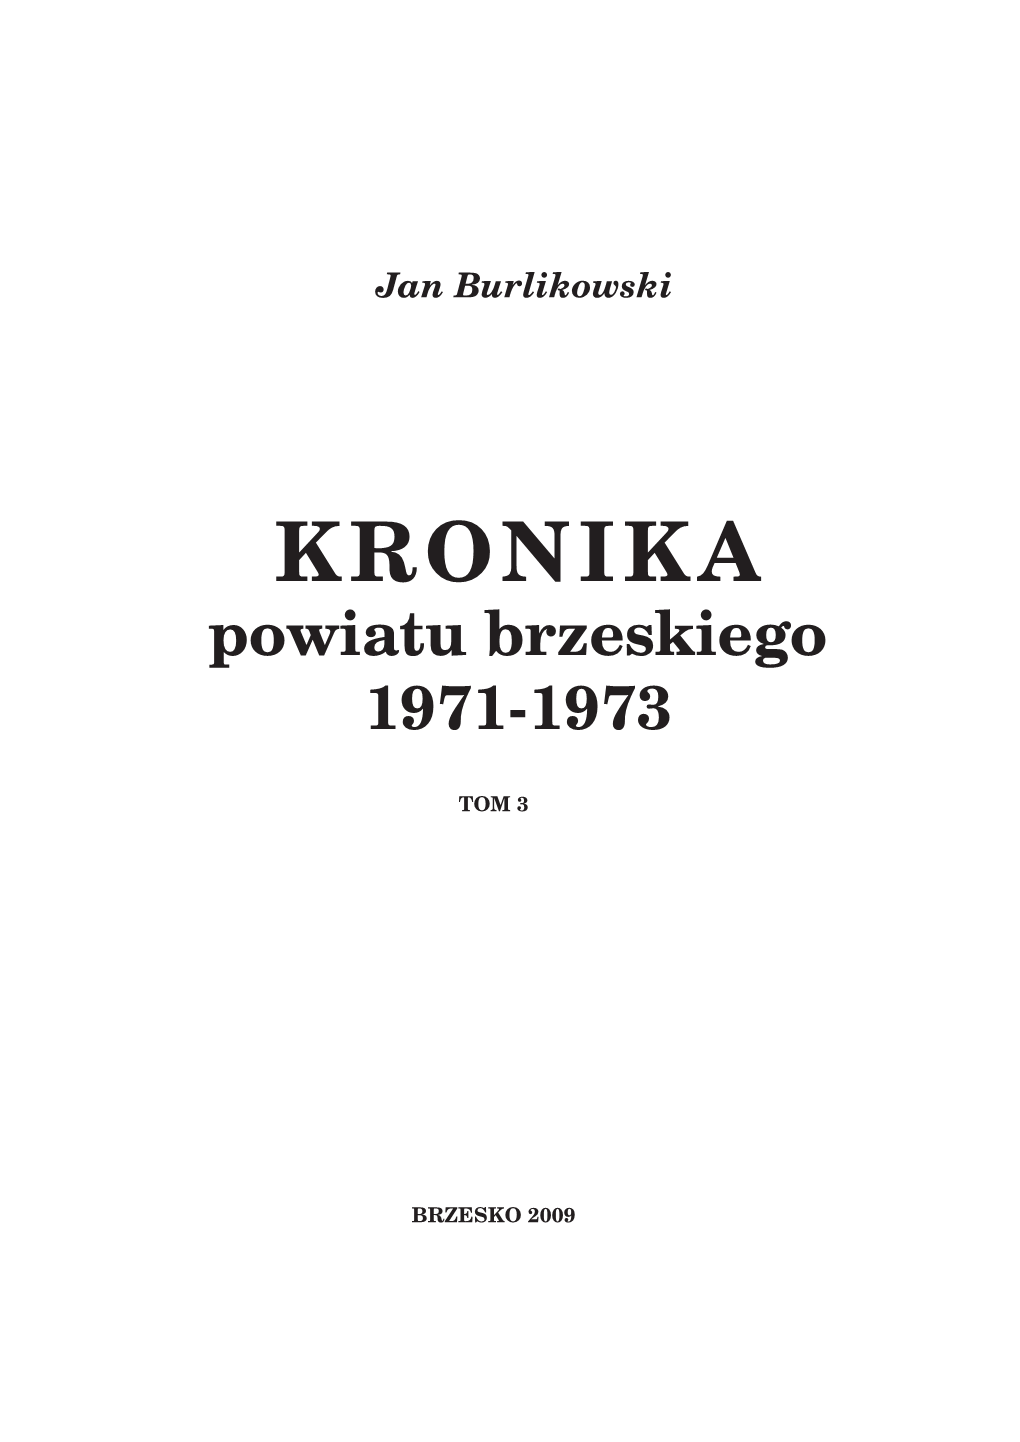 KRONIKA Powiatu Brzeskiego 1971-1973